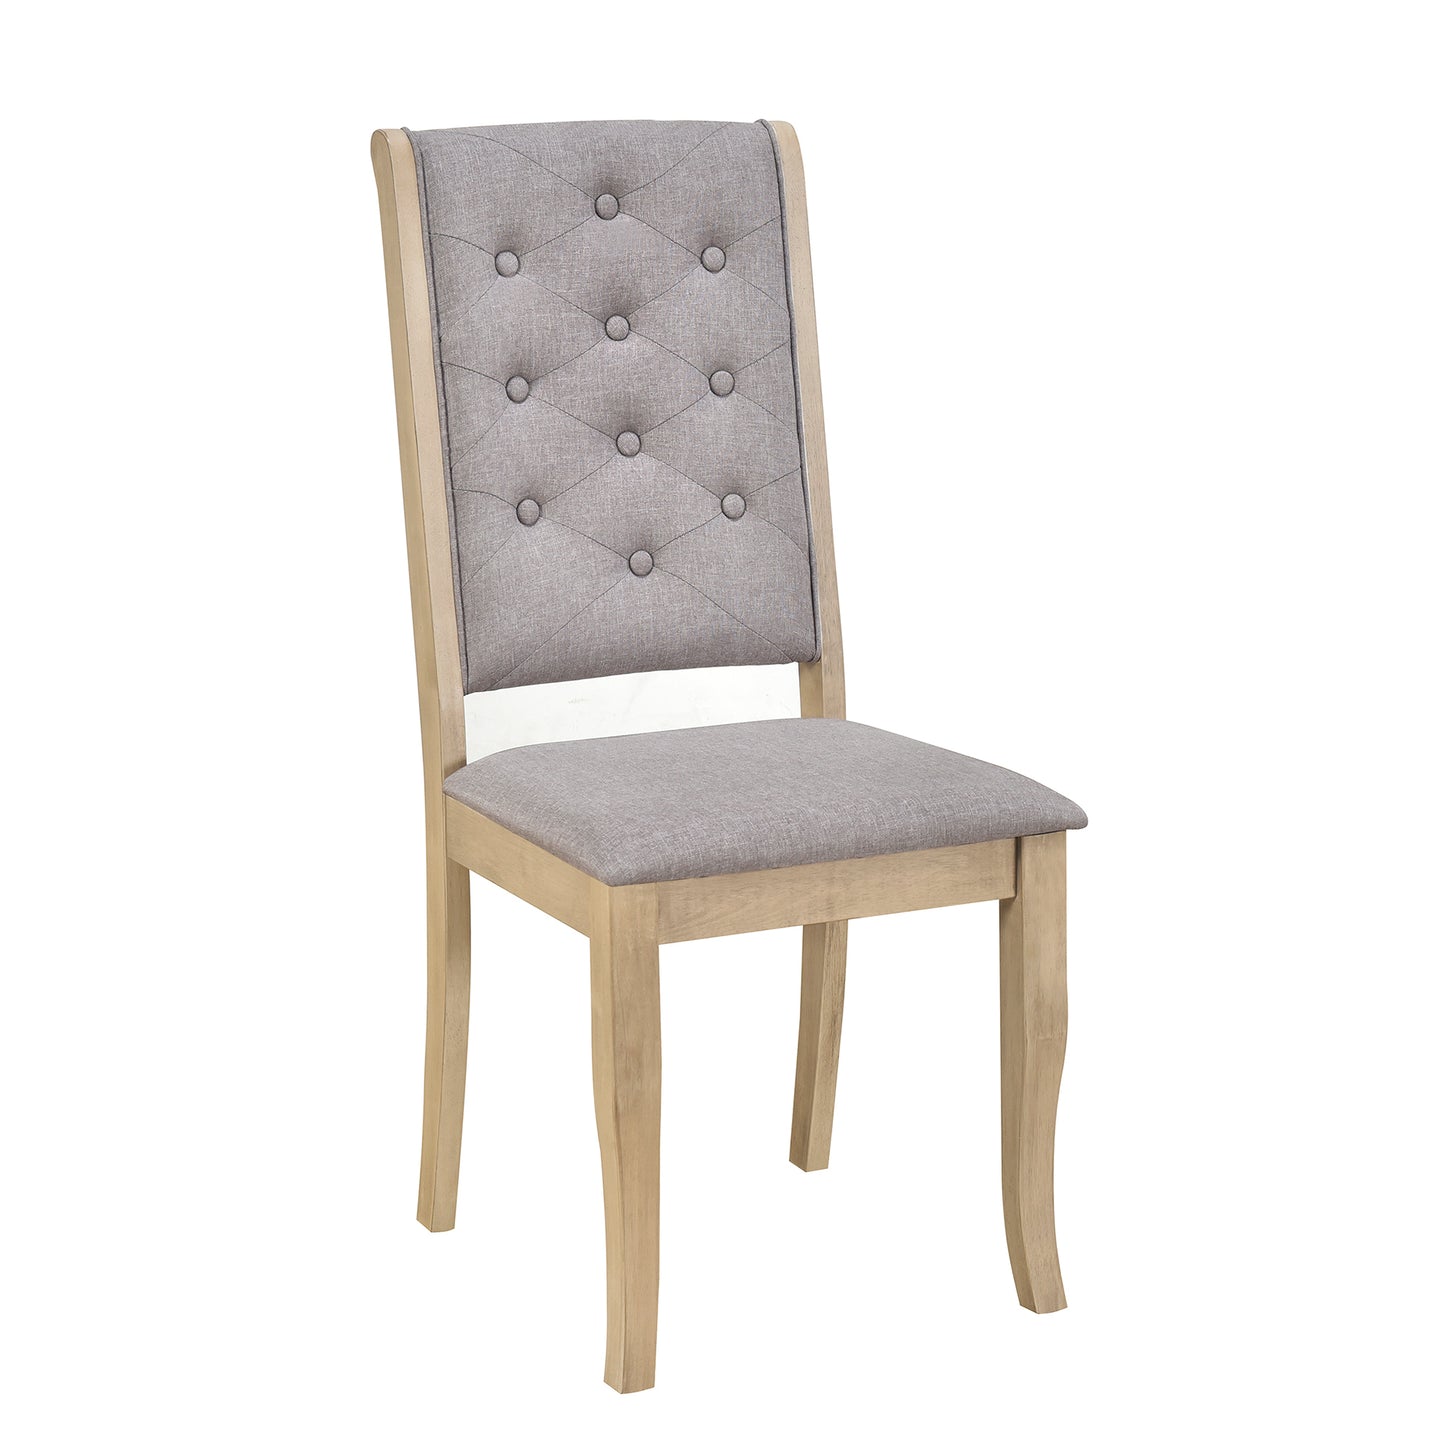 Juego de comedor retro de 6 piezas con patas de mesa con desplazamiento exclusivo y asientos tapizados (lavado gris)